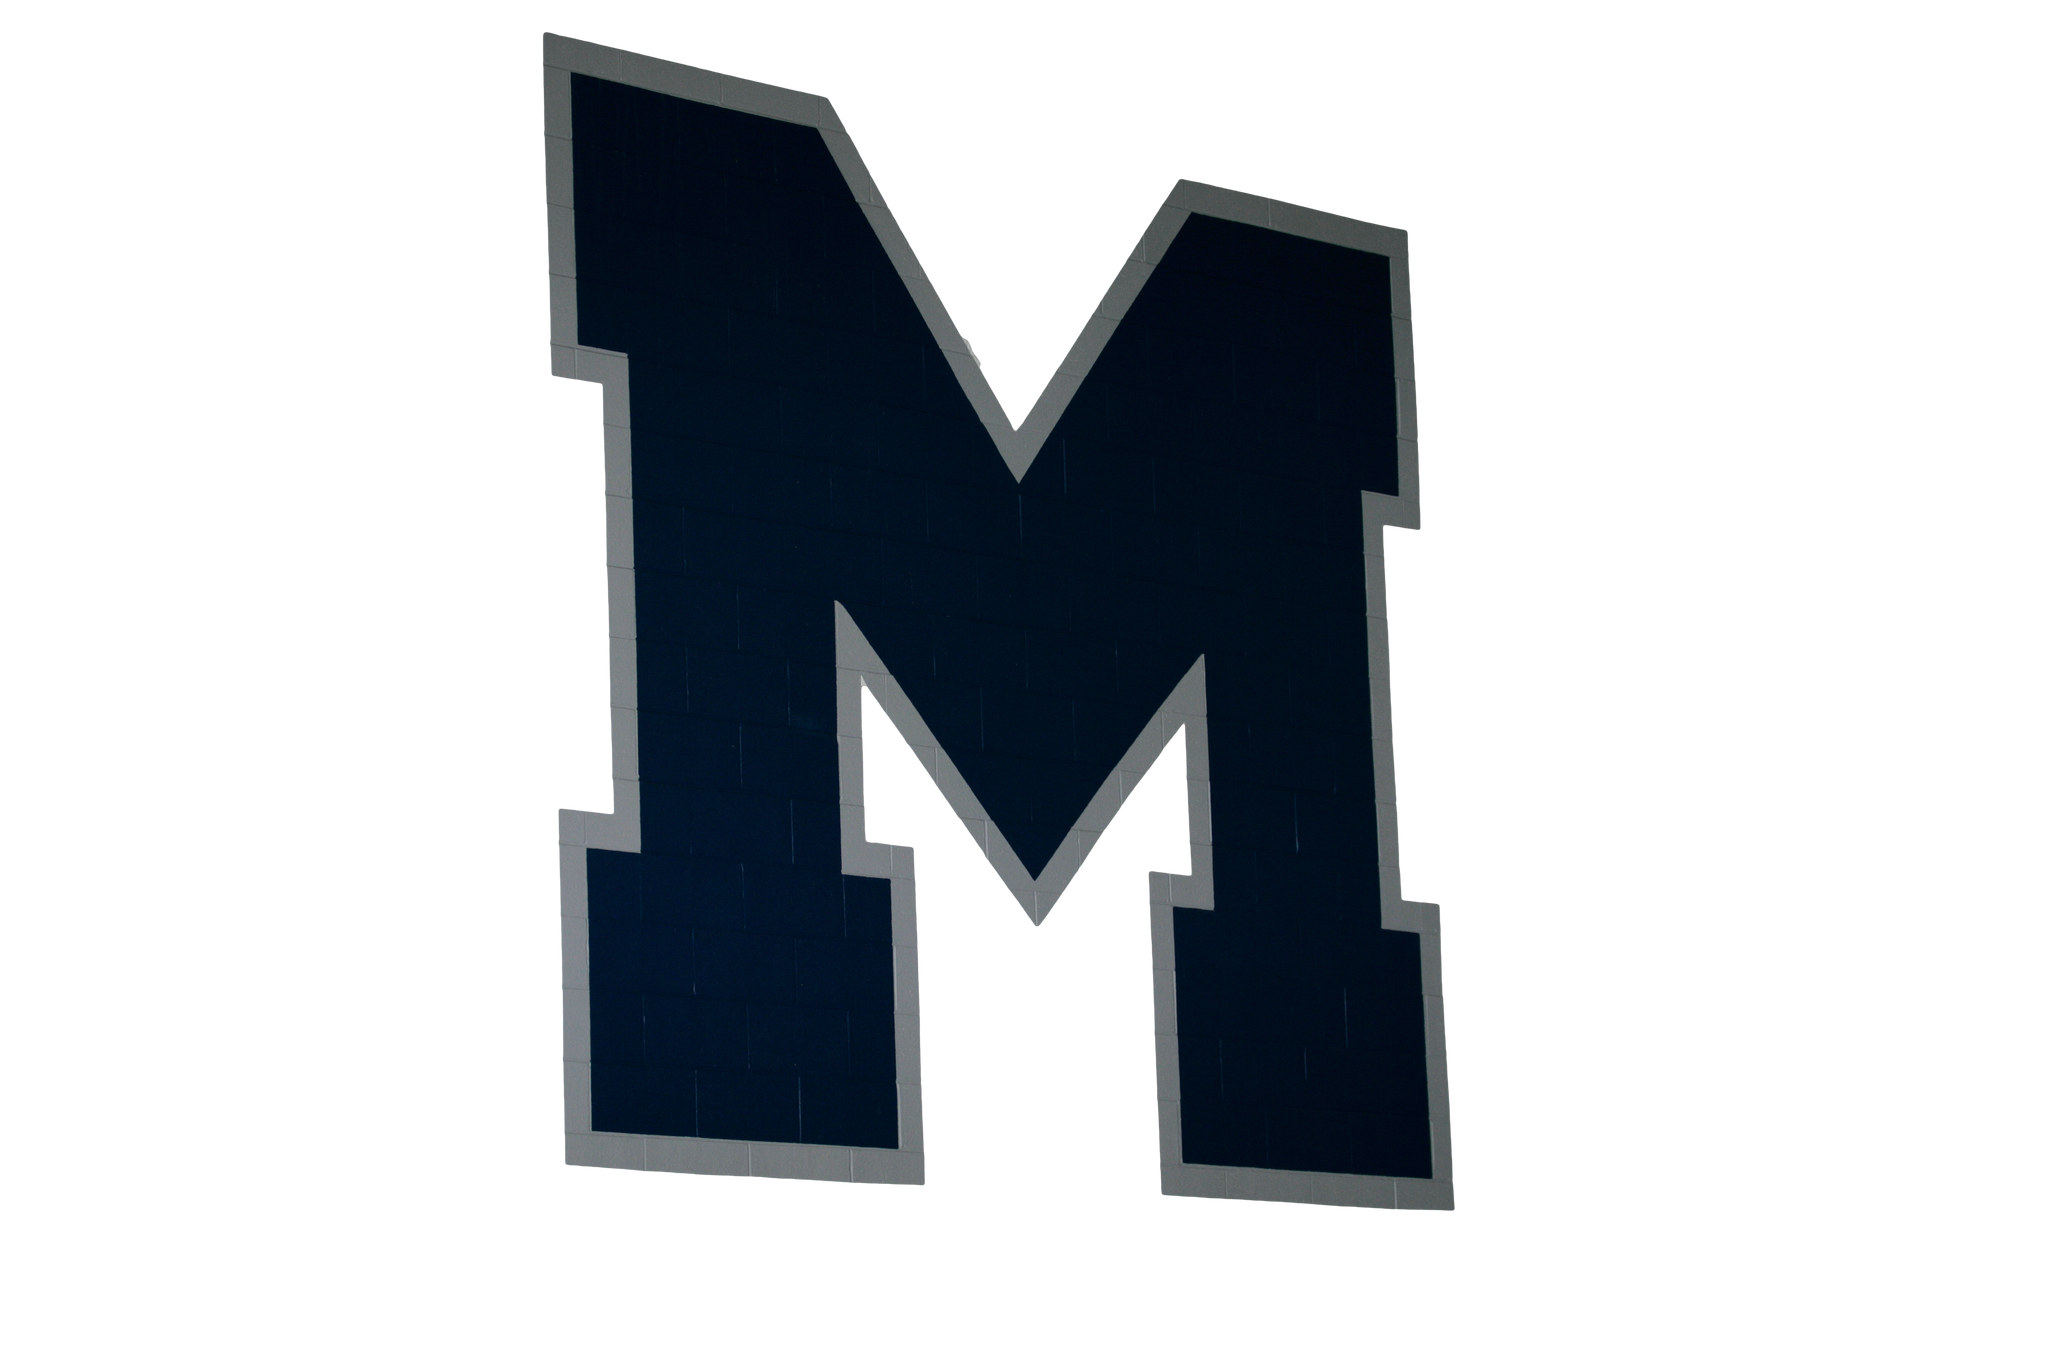 Malvern Prep Football vs. McDonogh School Game video - Active Image Media